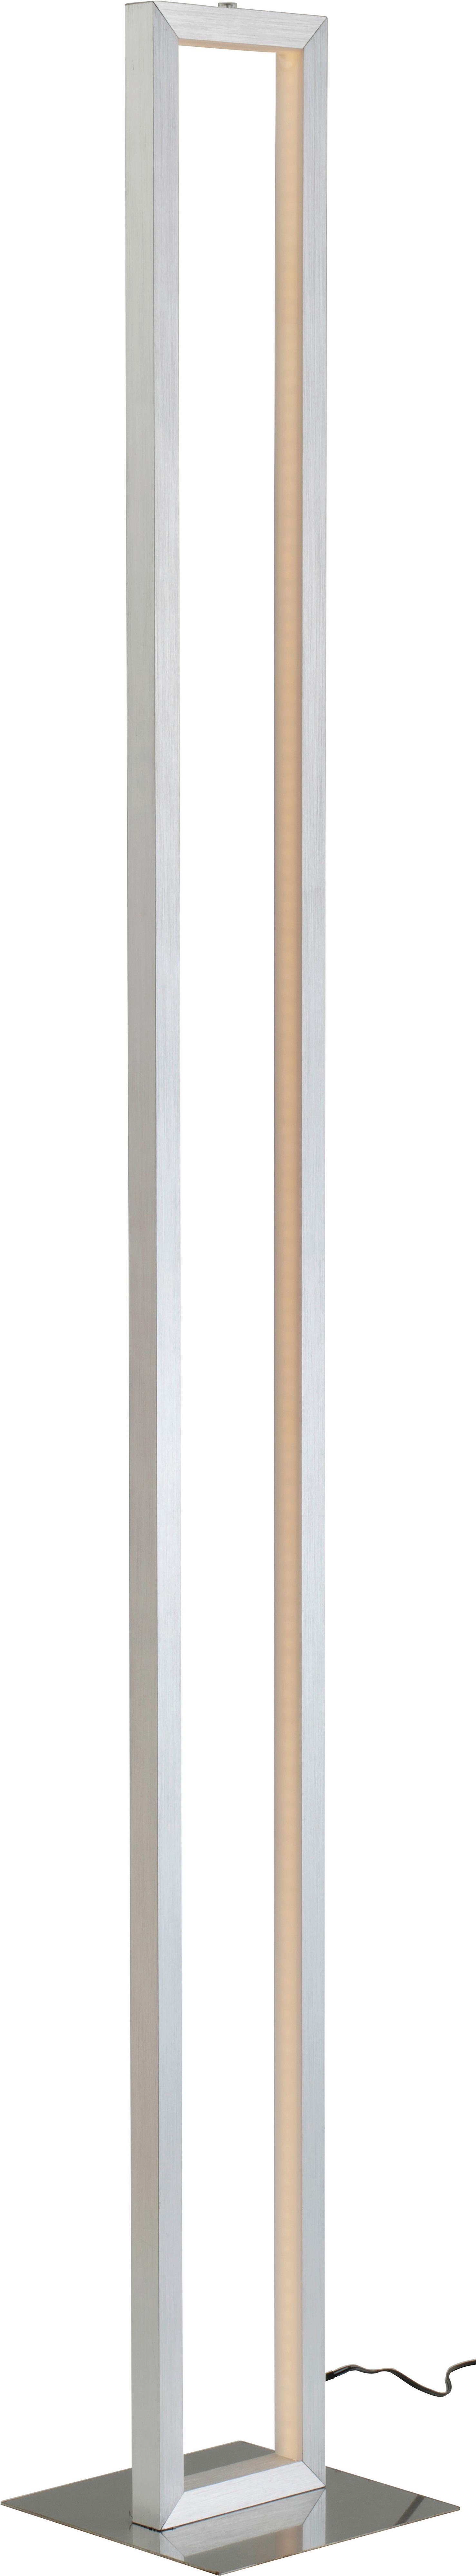 Podna Led Svjetiljka Erion - bijela/boje nikla, Konventionell, metal/plastika (16/16/120cm) - Premium Living